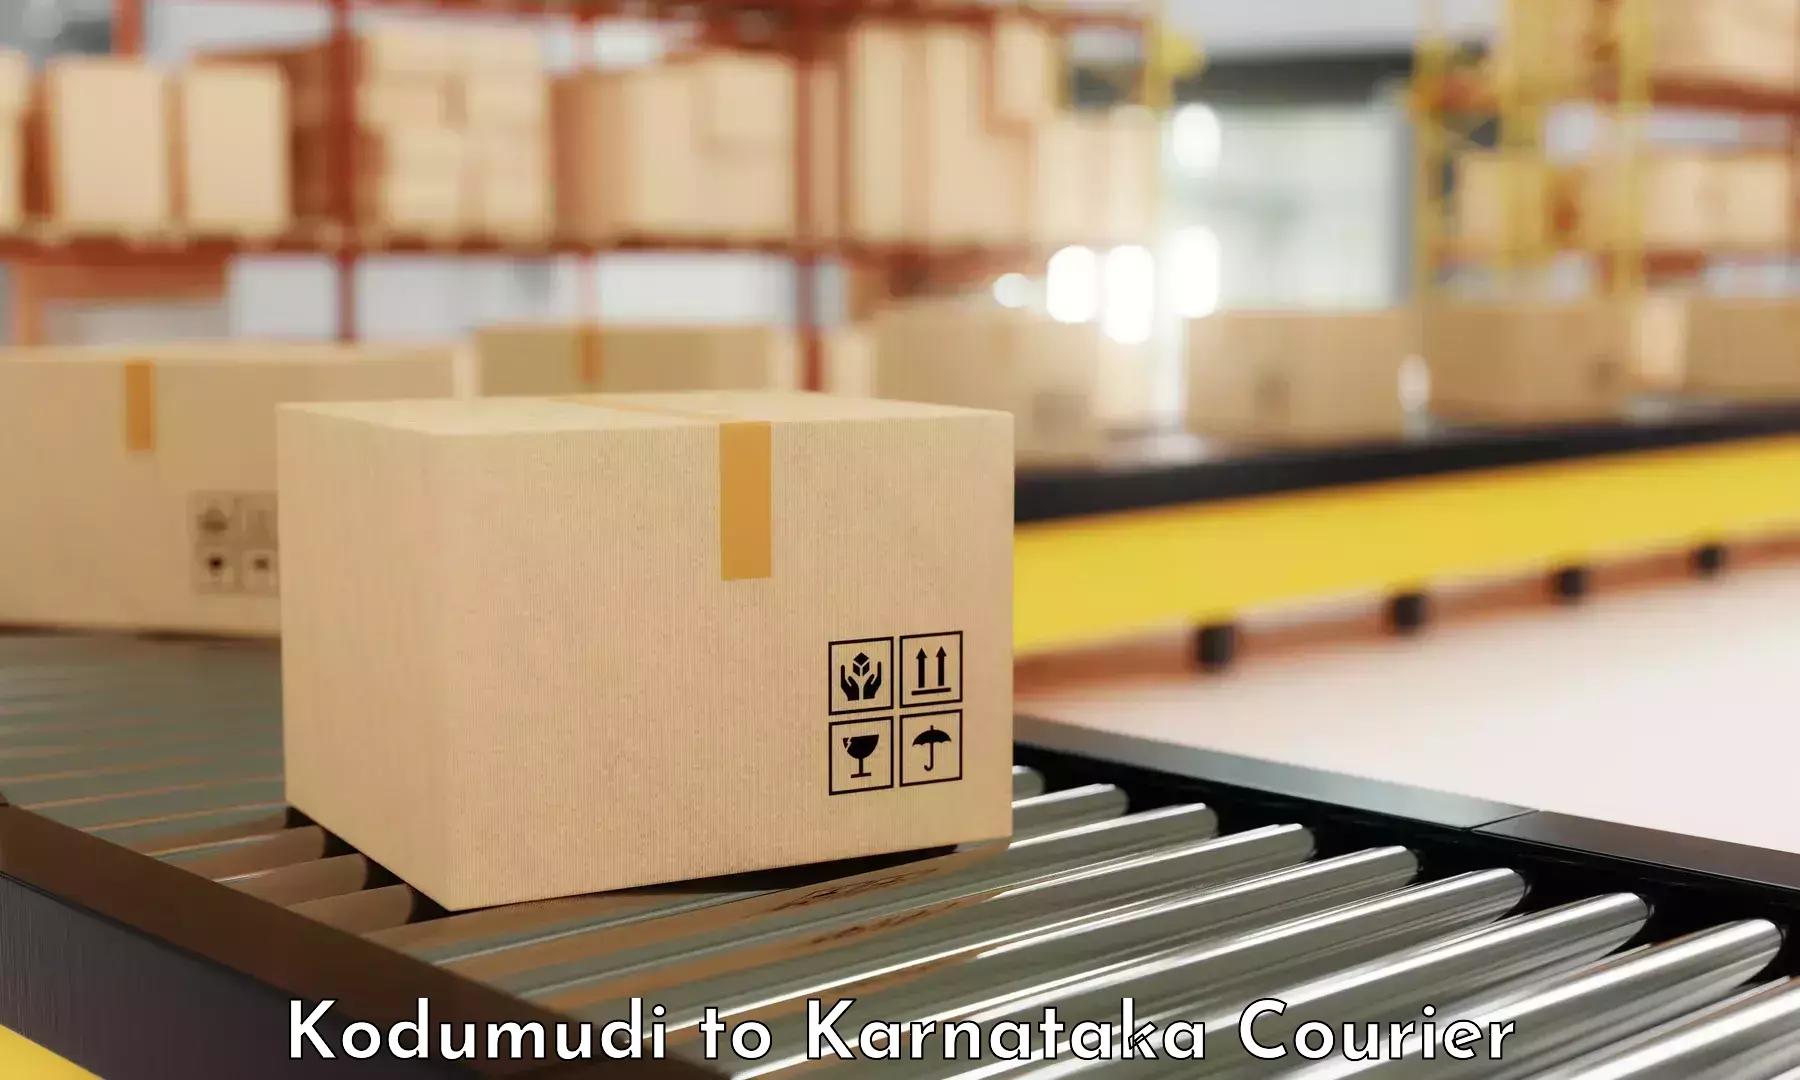 Courier service comparison Kodumudi to Chincholi